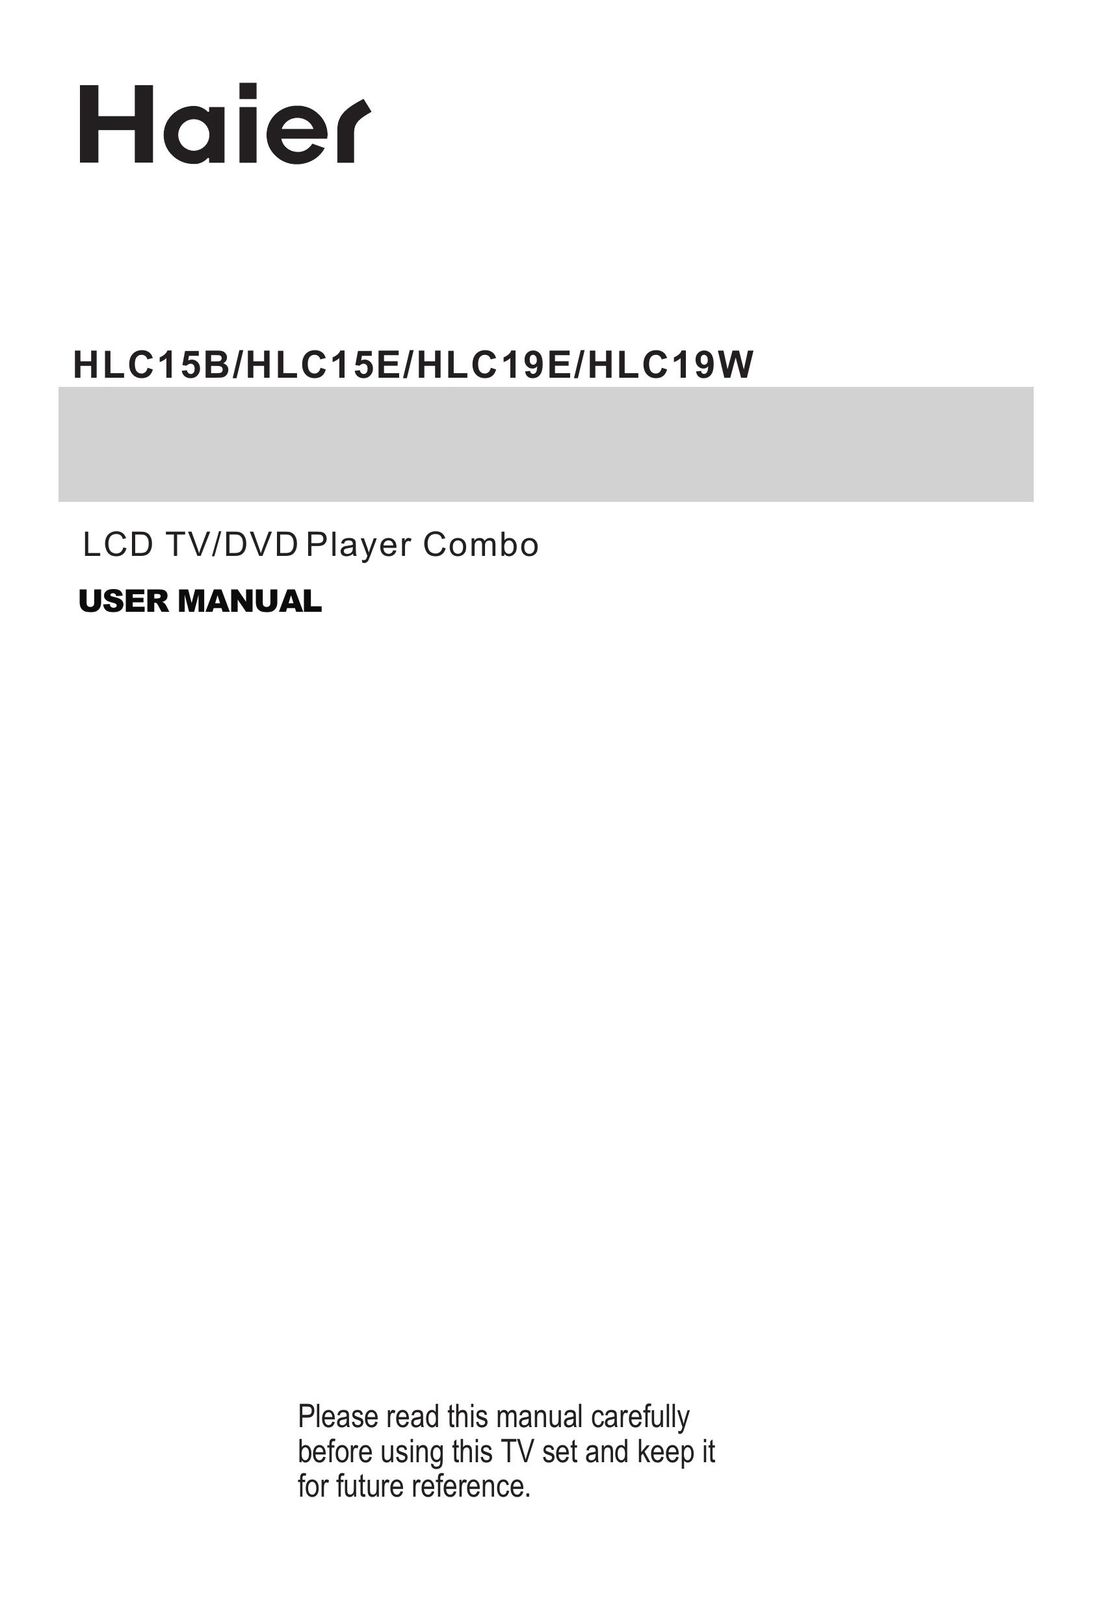 Haier HLC1 TV DVD Combo User Manual